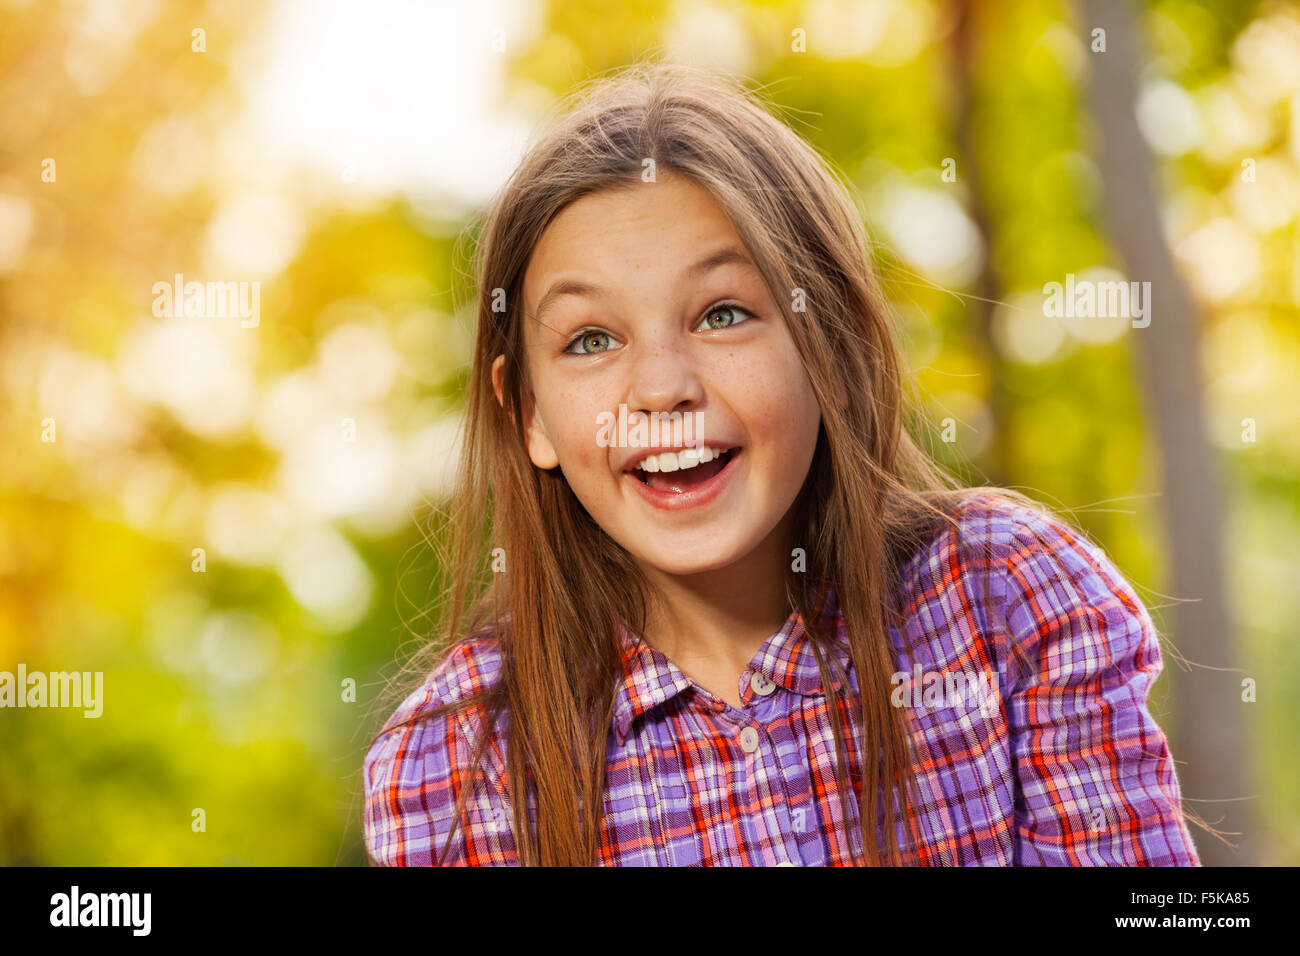 Peu laughing girl portrait in autumn park Banque D'Images